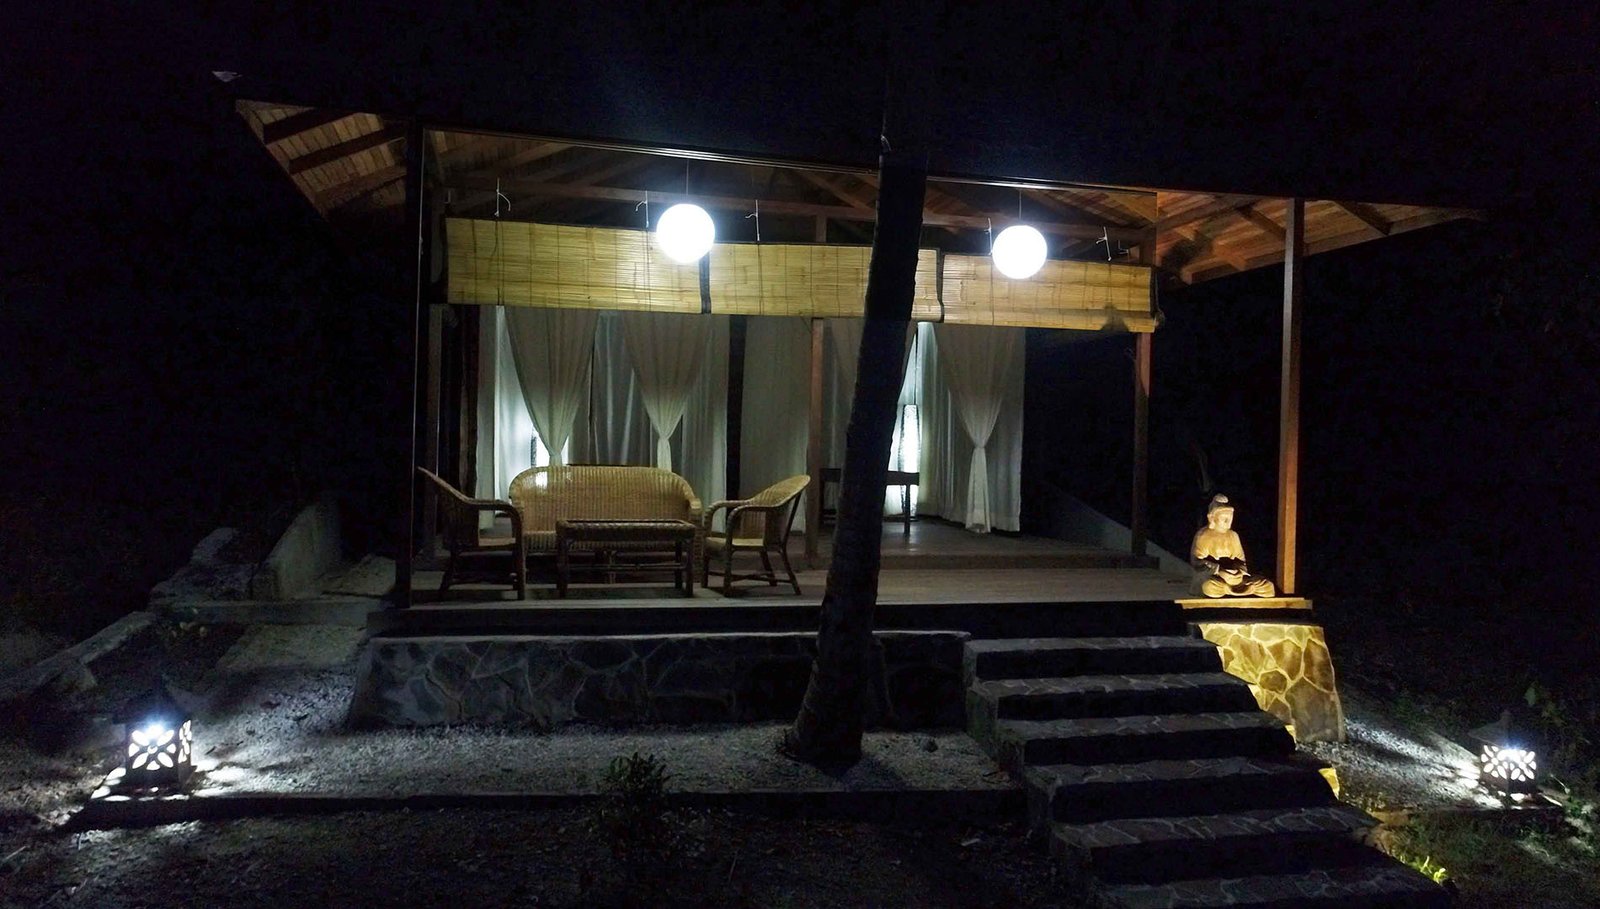 Spa - Sali Bay Resort, South Halmahera, North Maluku